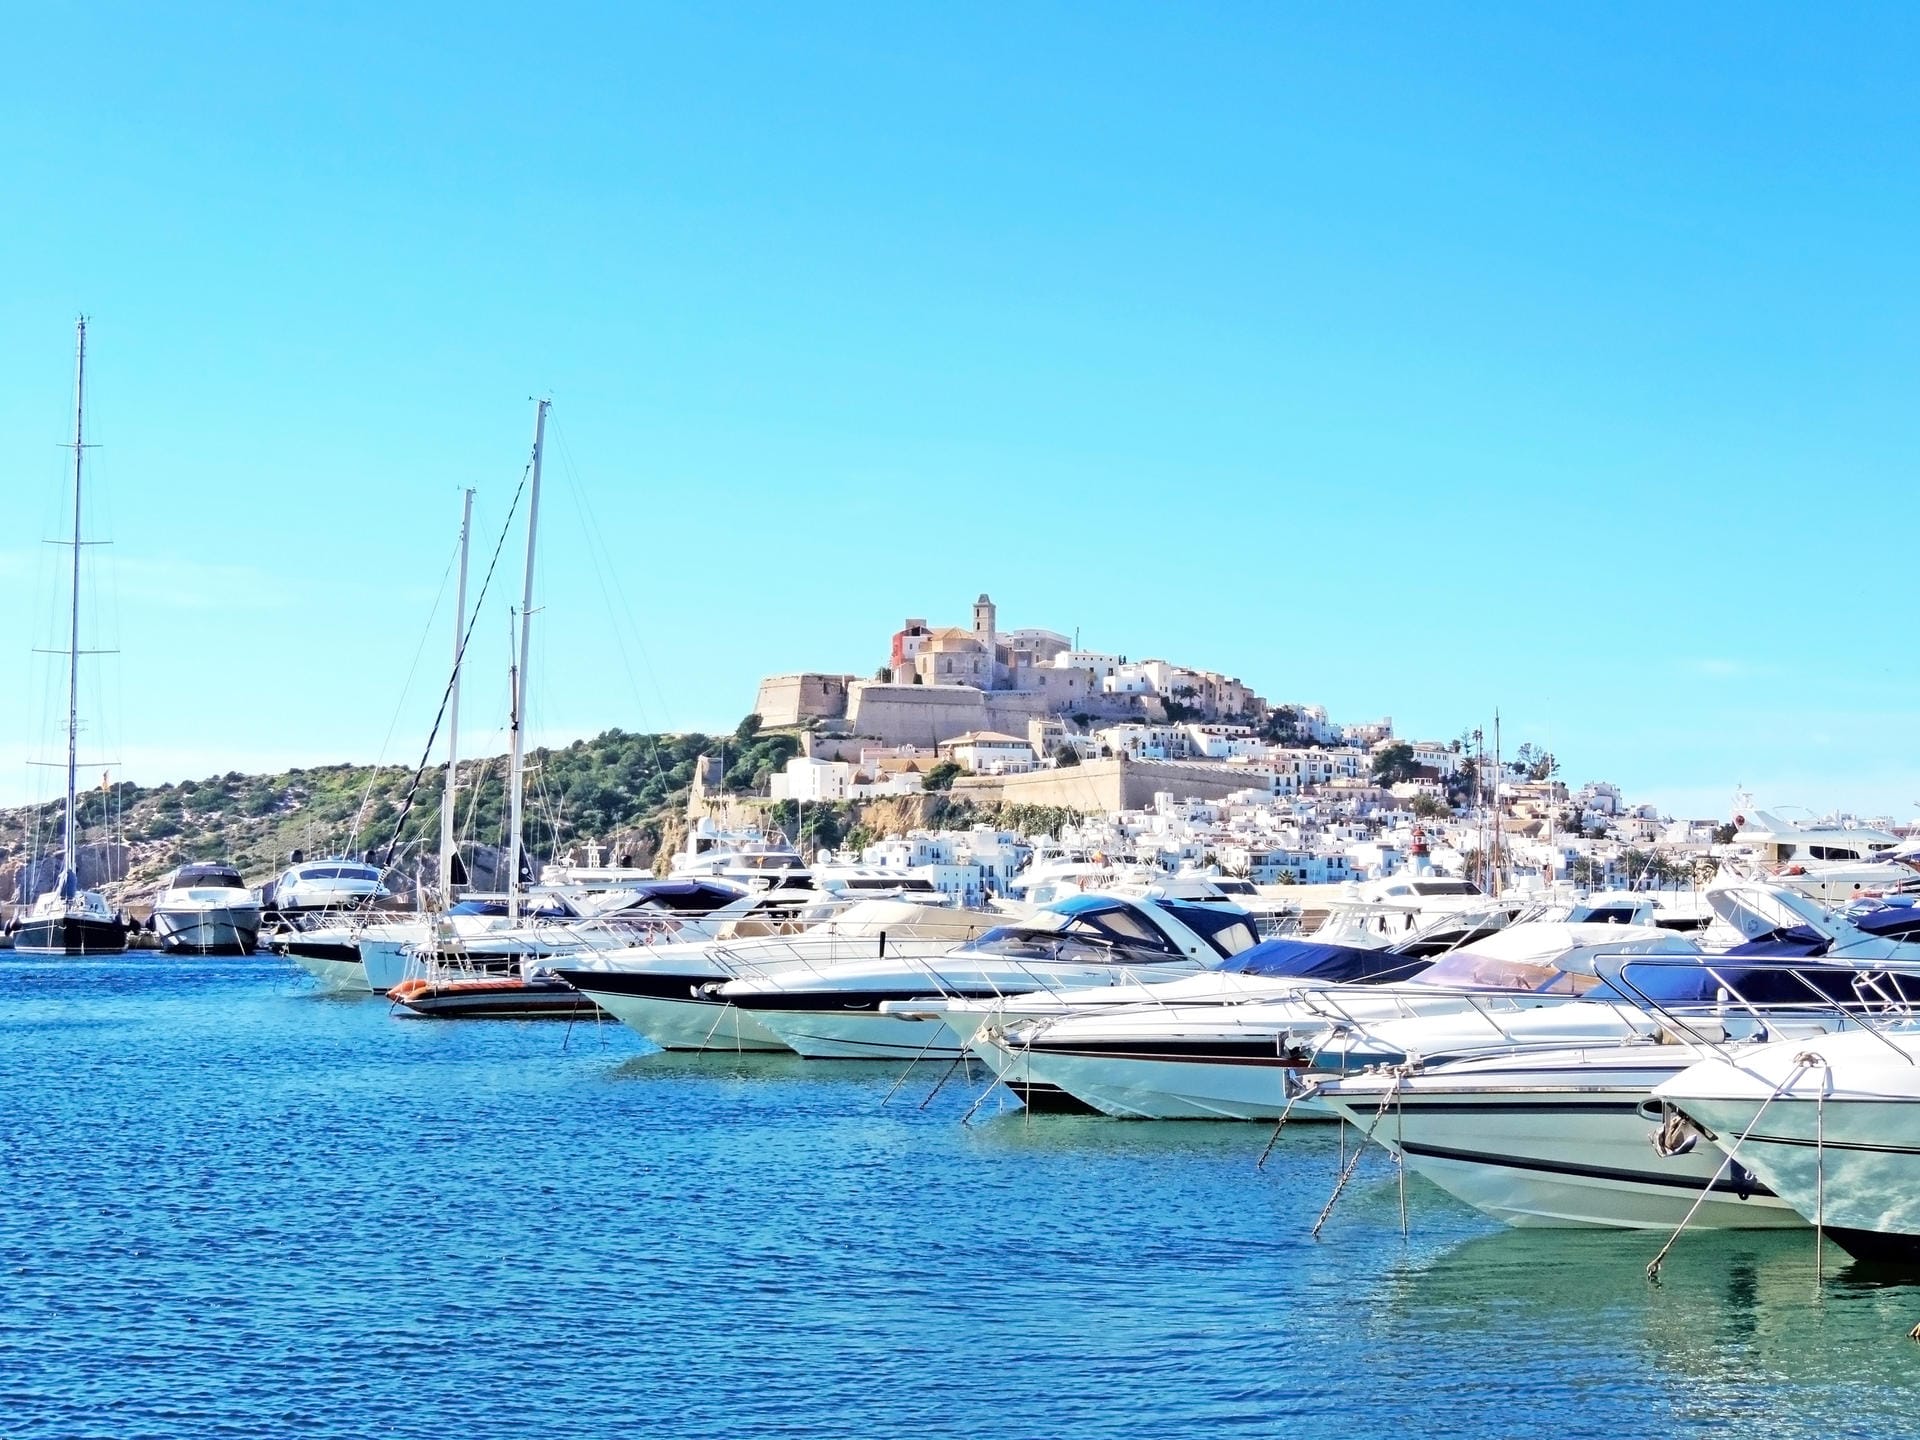 Runter von Jacht, ab auf die Party: Die Marina Ibiza Magna liegt nur wenige Schritte vom weltberühmten "Pacha"-Club entfernt. Den passenden Luxusjacht-Liegeplatz bucht man für etwa 2800 Euro pro Nacht.